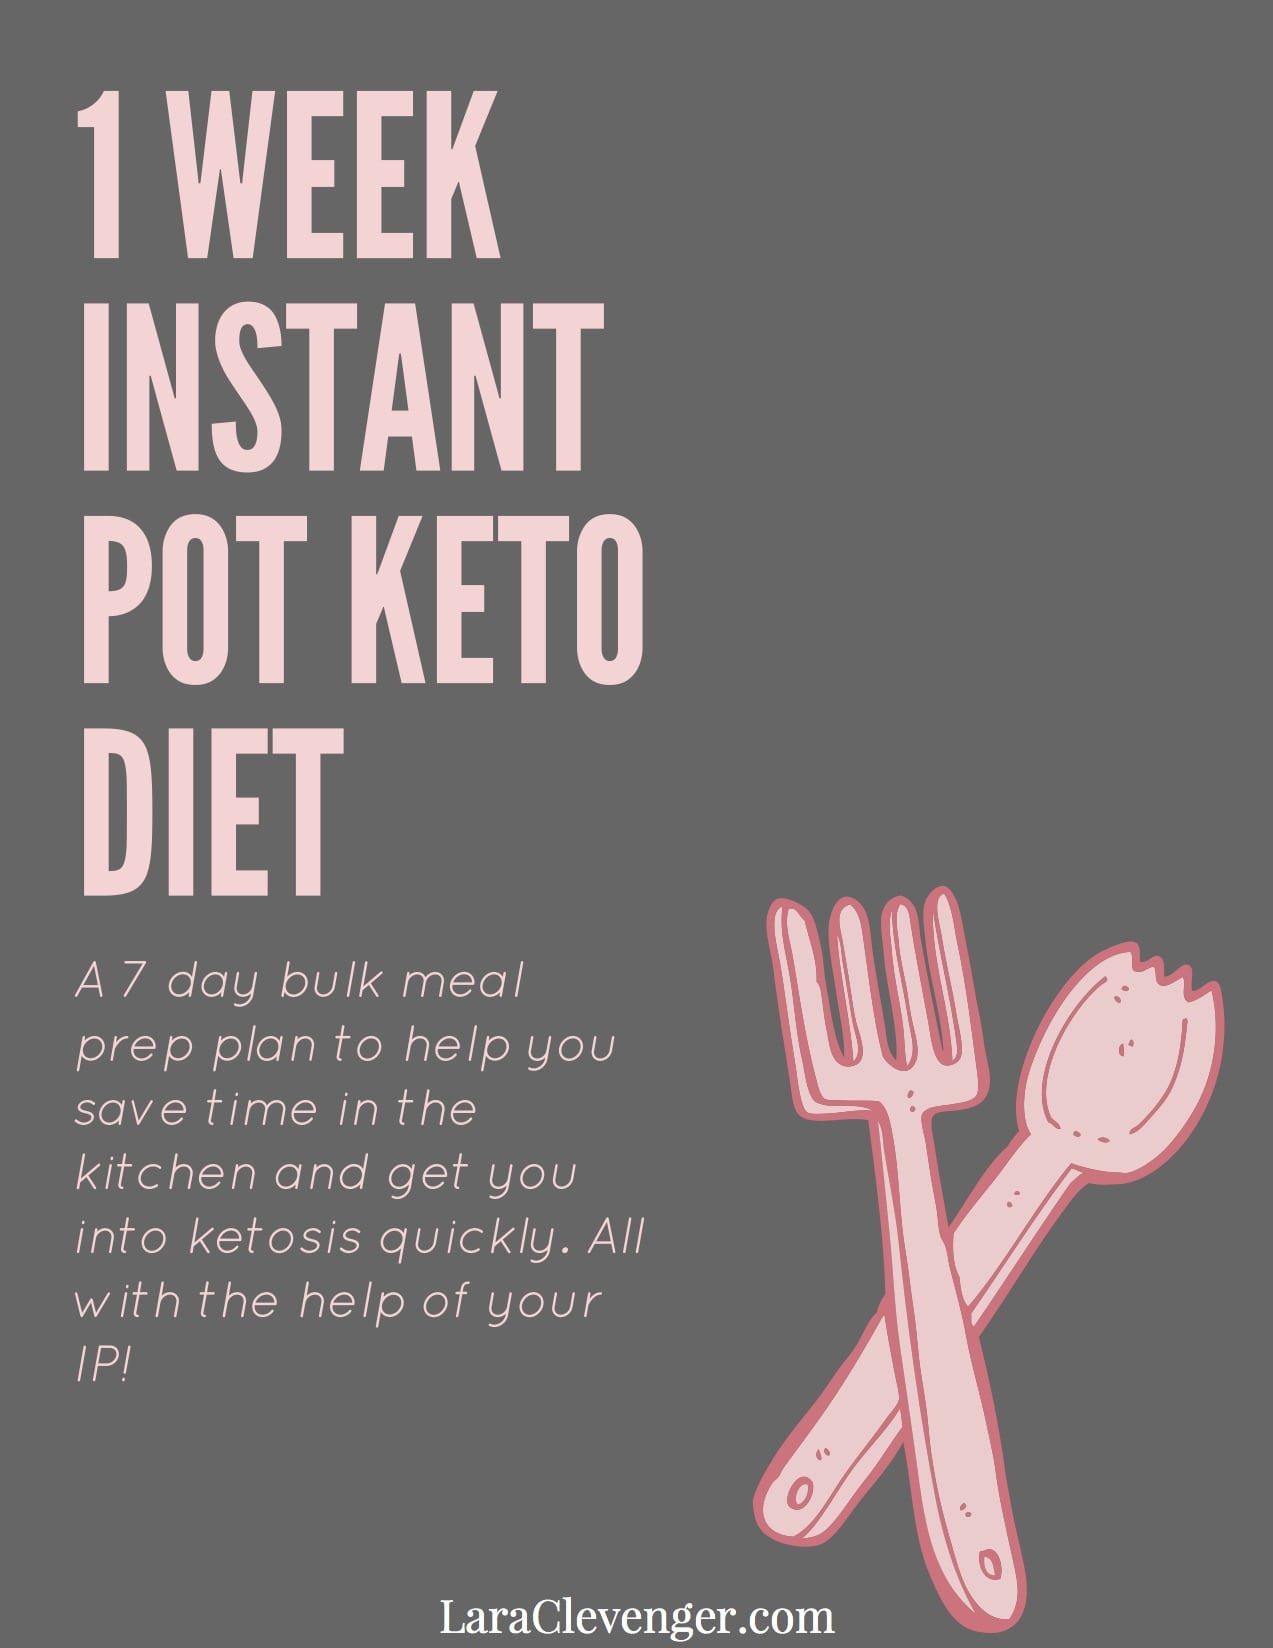 Keto Diet Meal Plan Week 1
 Free 1 Week Instant Pot Keto Diet Meal Plan